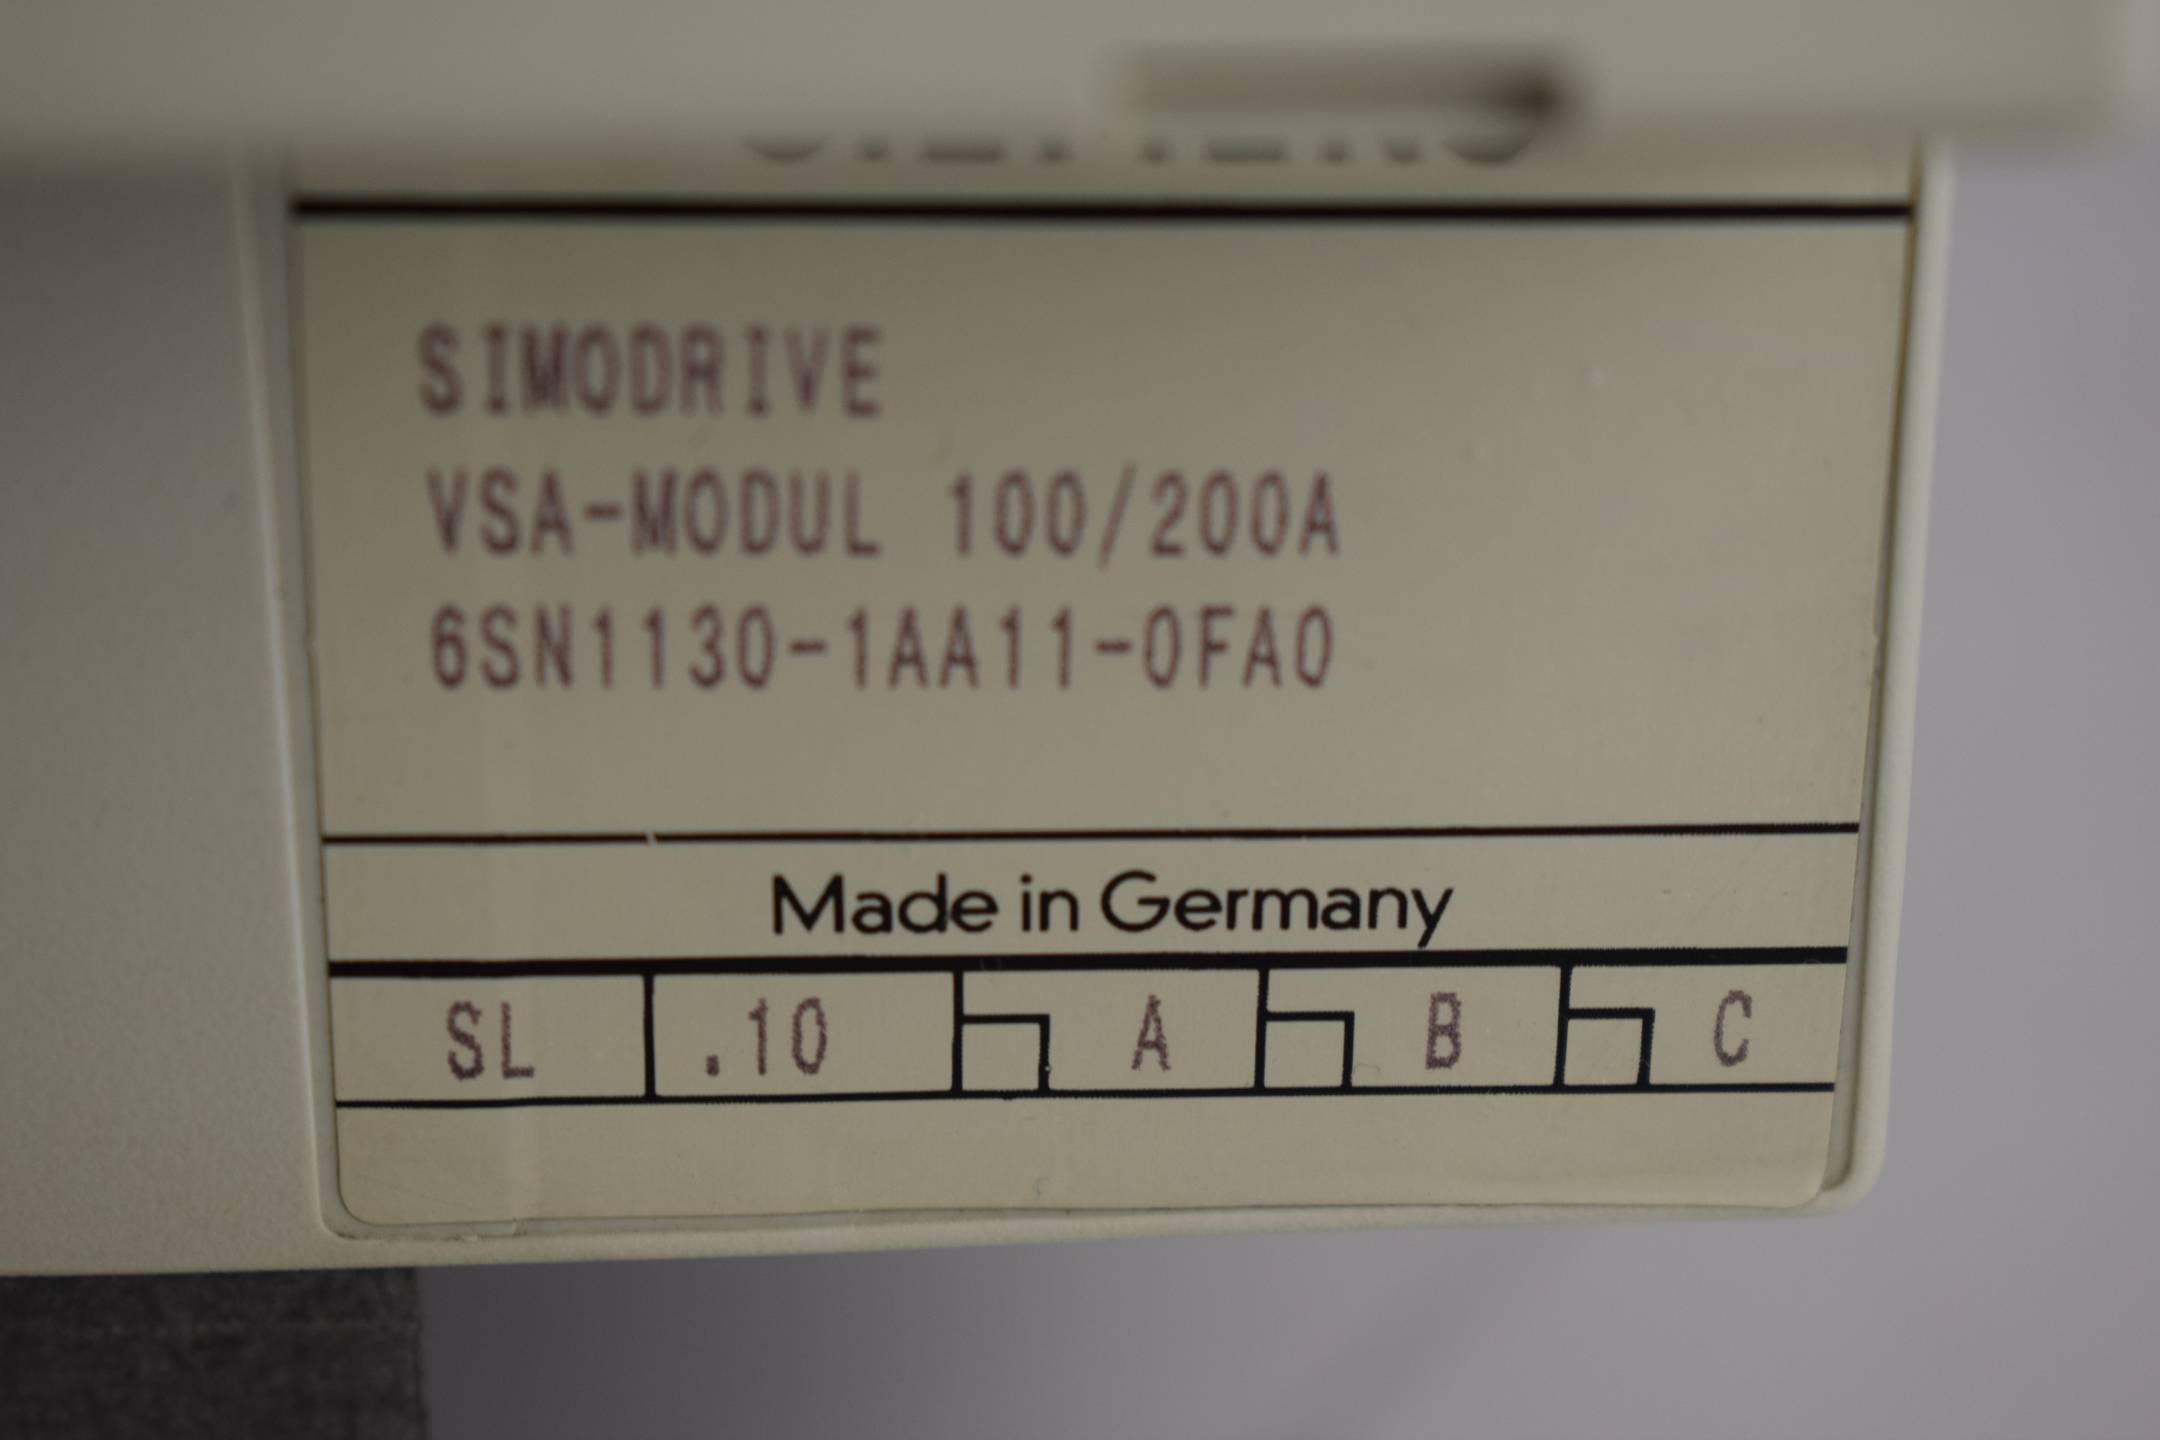 Siemens simodrive VSA-Modul 100/200A 6SN1130-1AA11-0FA0 ( 6SN1 130-1AA11-0FA0 )